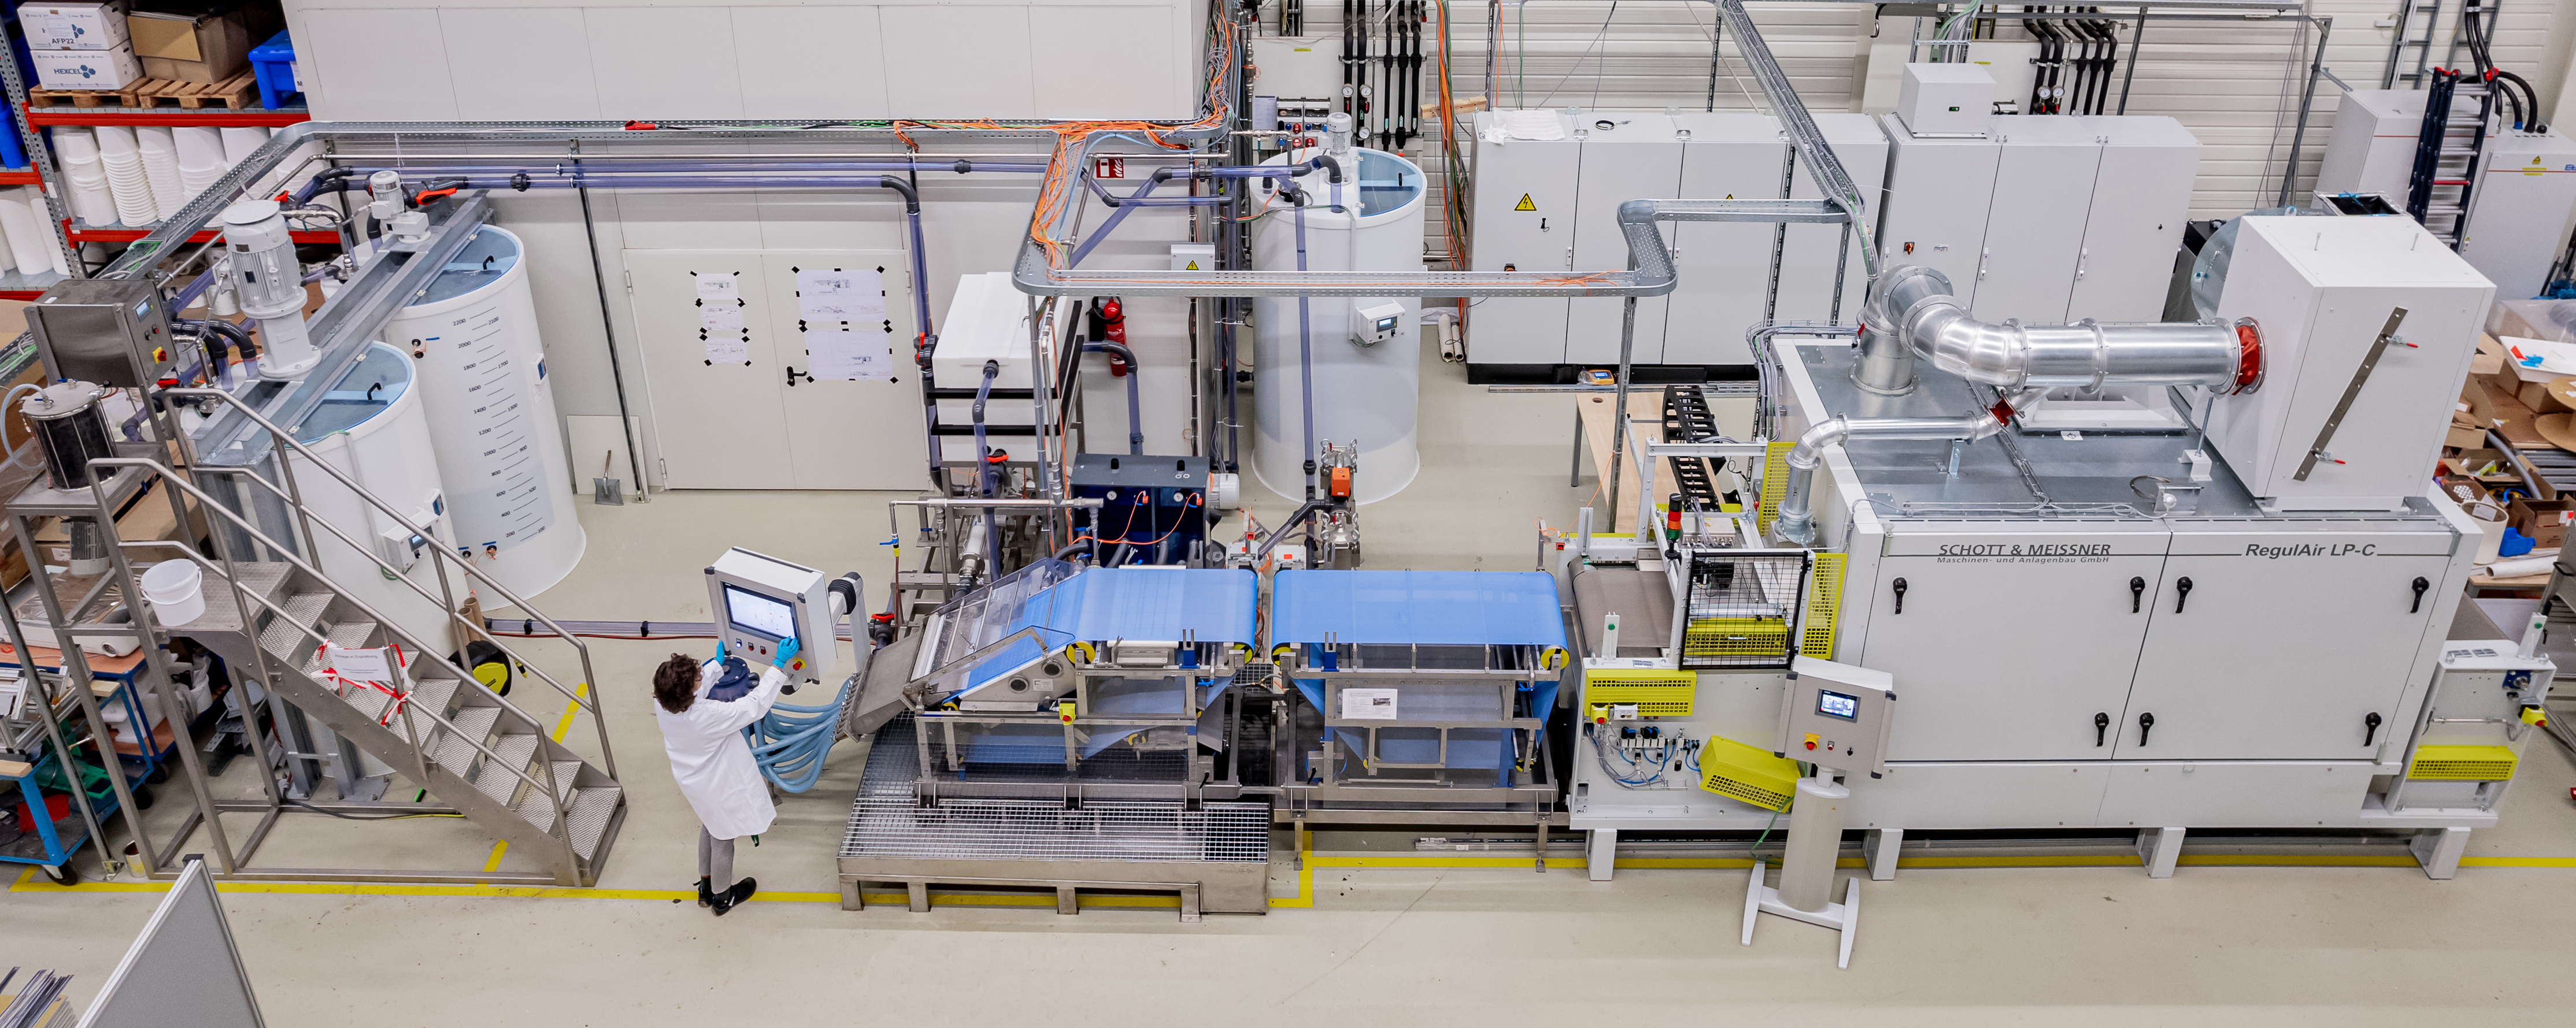 Am Fraunhofer IGCV wurde eine einzigartige Nassvliesanlage im Technikumsmaßstab aufgebaut, mit der jegliche Fasermaterialien - vor allem recycelte Carbonfasern - zu innovativen und neuartigen Vliesstoffen verarbeitet werden können.